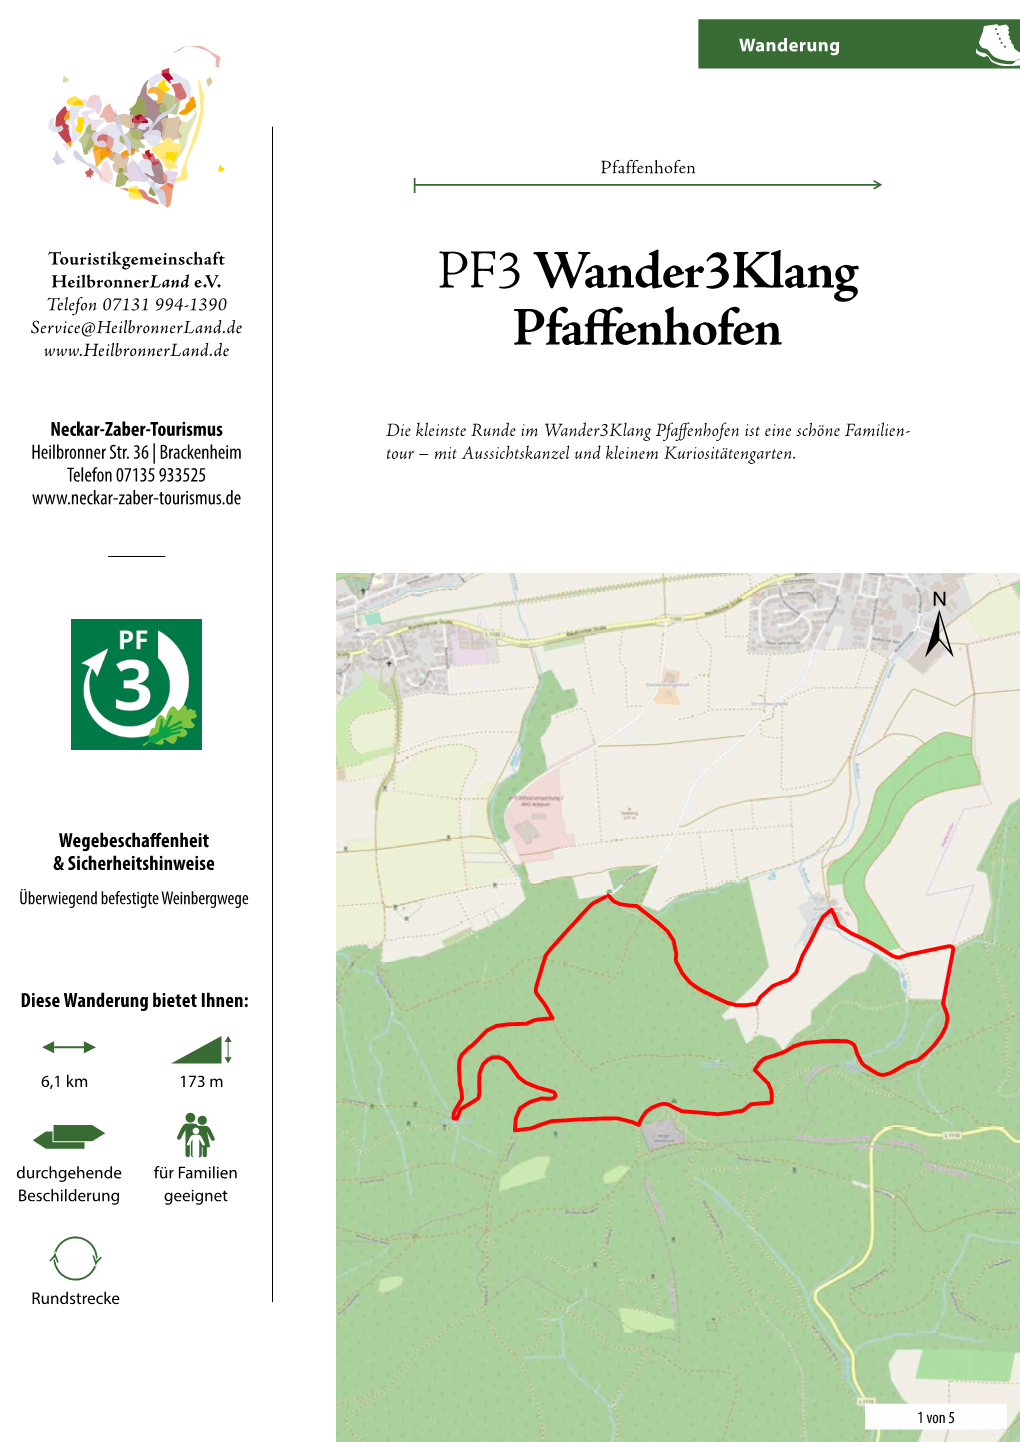 PF3 Wander3klang Pfaffenhofen Wanderung